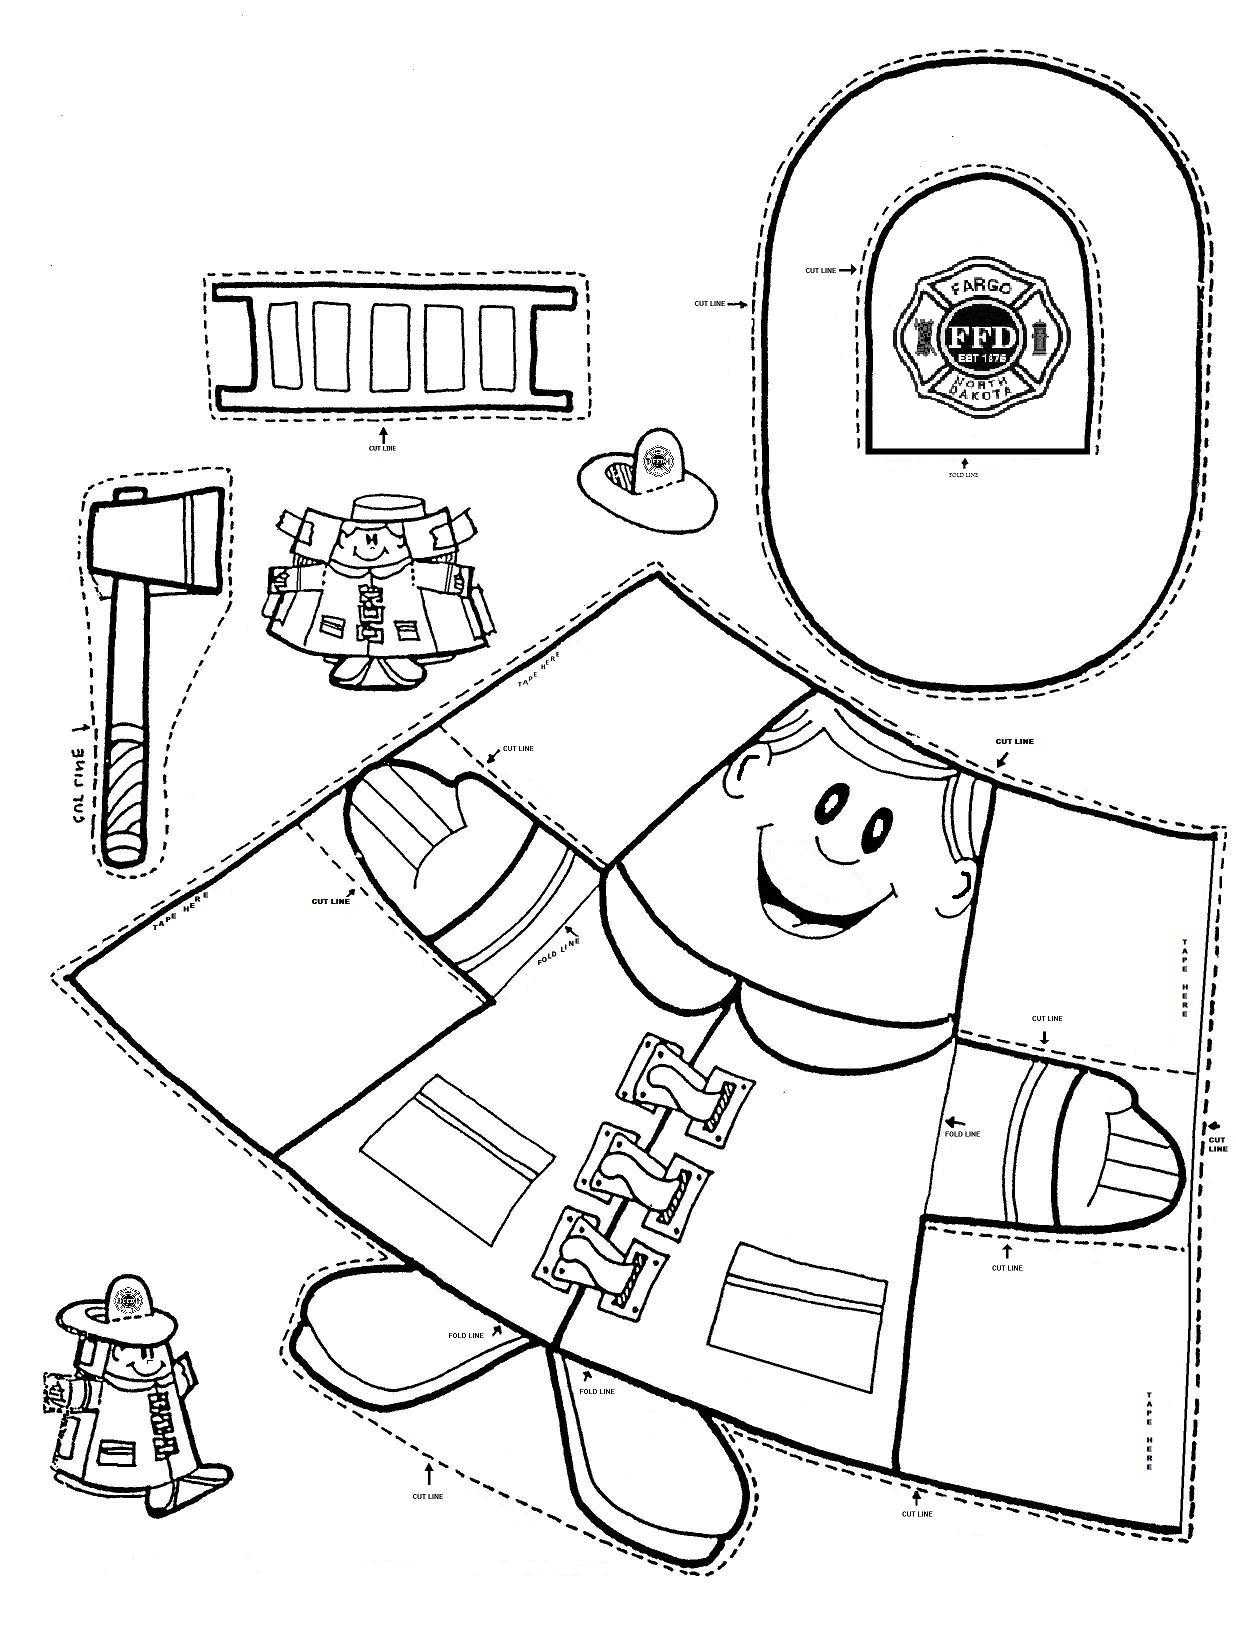 Pre K Shapes Worksheets with Kindergarten Munity Helper Worksheets for Kindergarten Squish